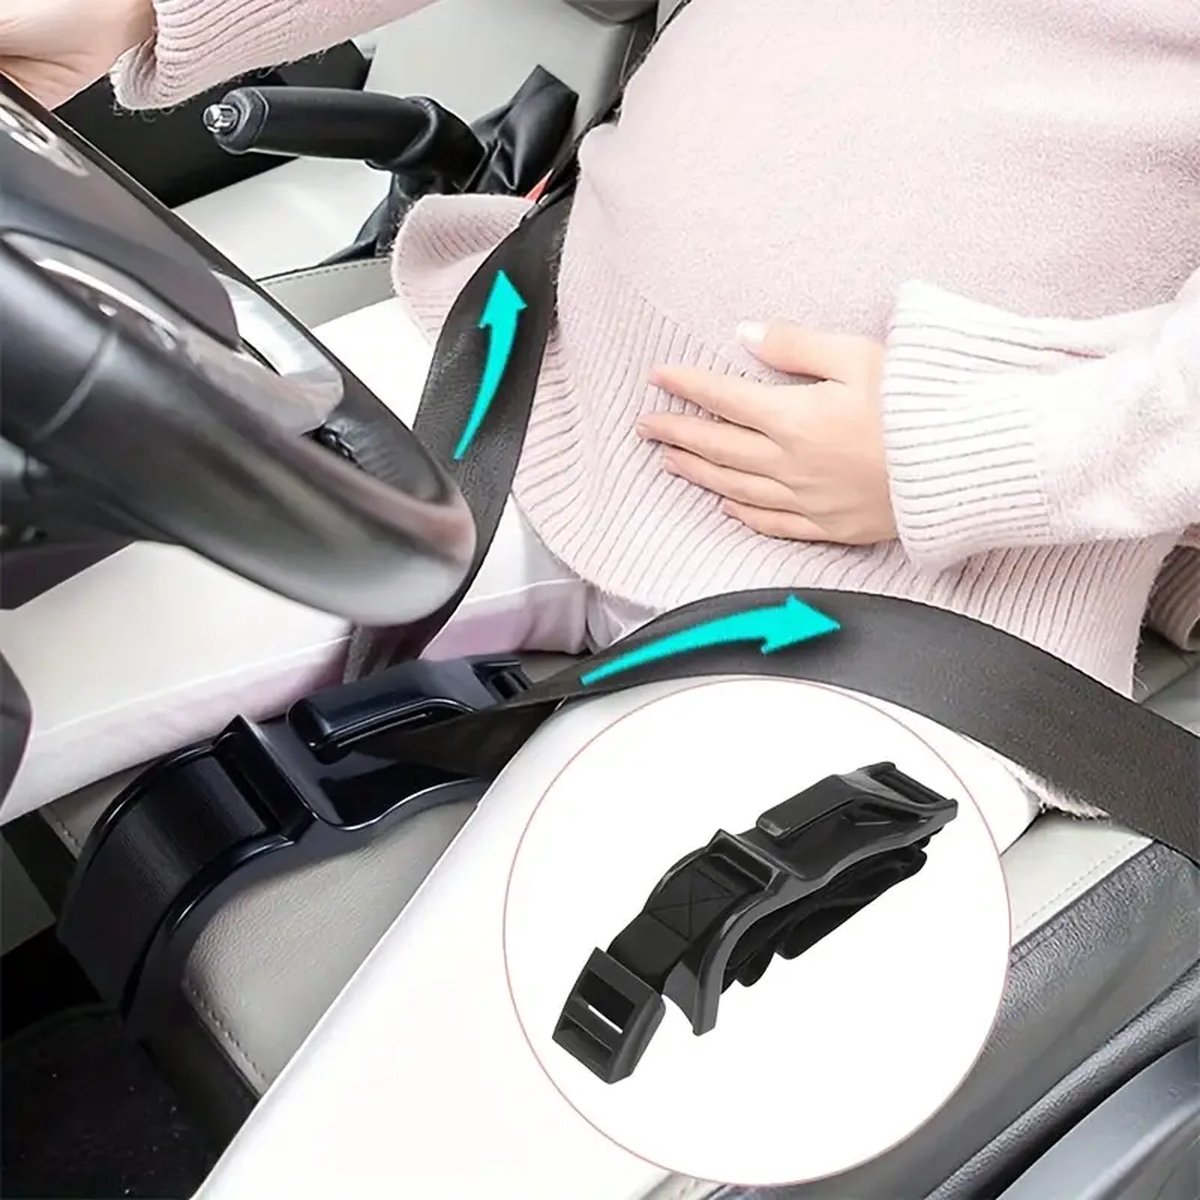 Ceinture de maternité - ceinture de grossesse pour voiture - guide